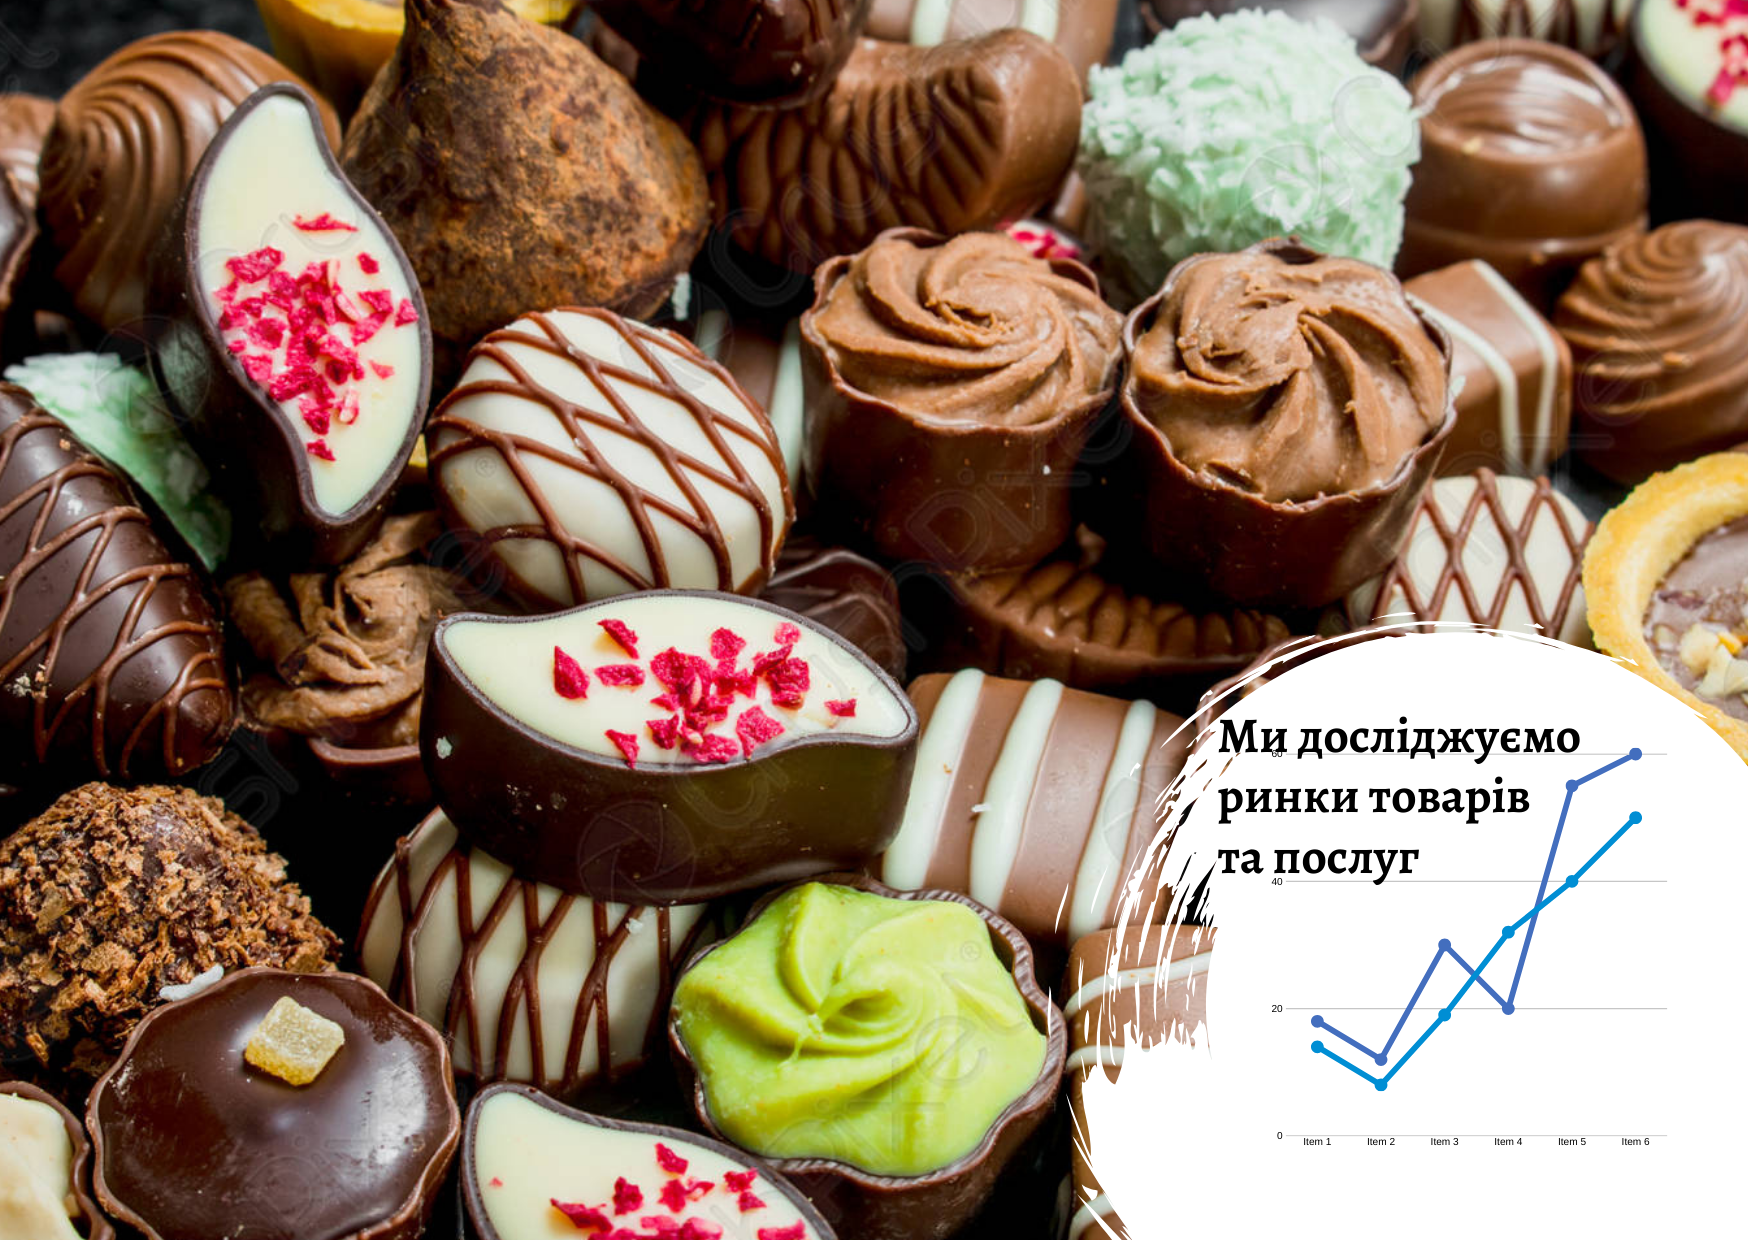 Ukrainian chocolates premium segment